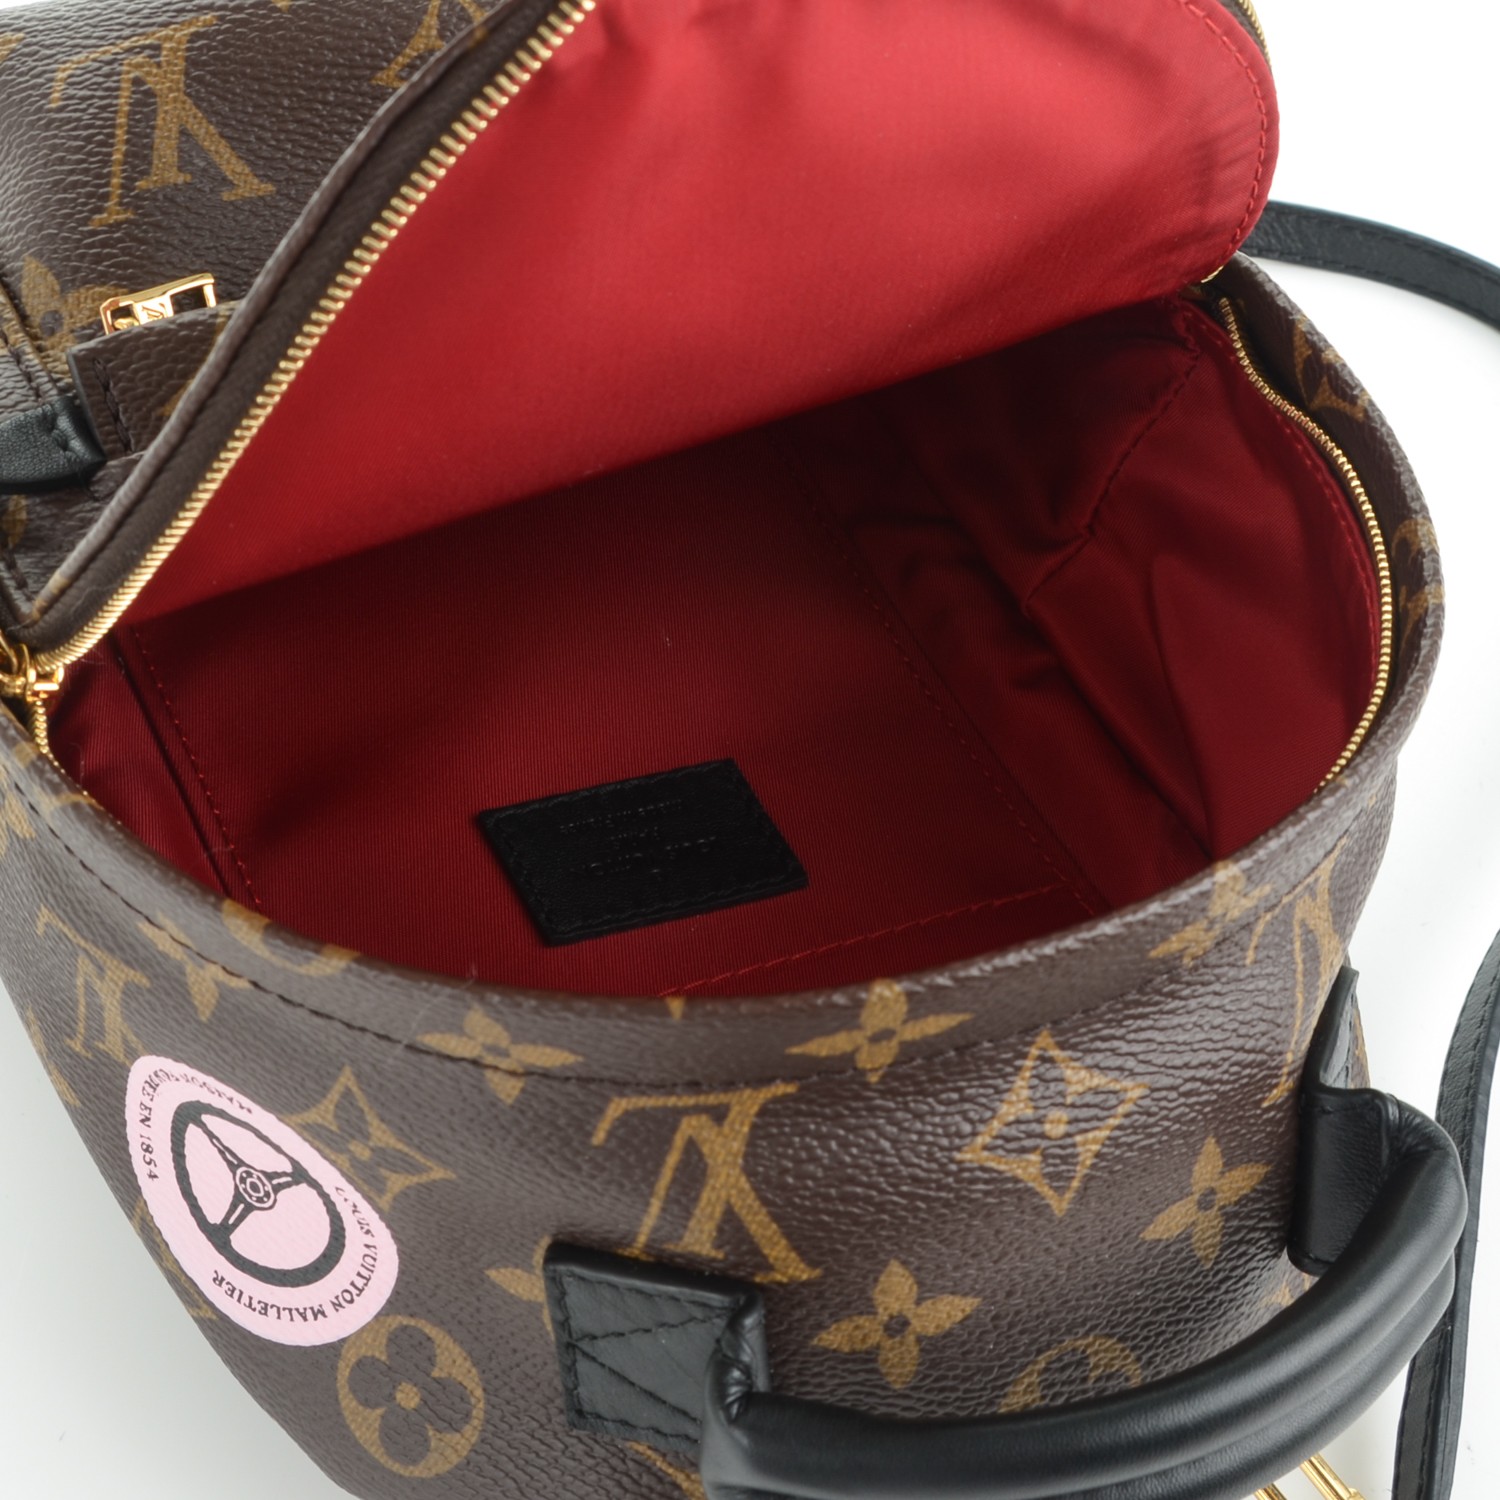 Louis Vuitton Palm Springs Mini Backpack Dupe Ahoy Comics